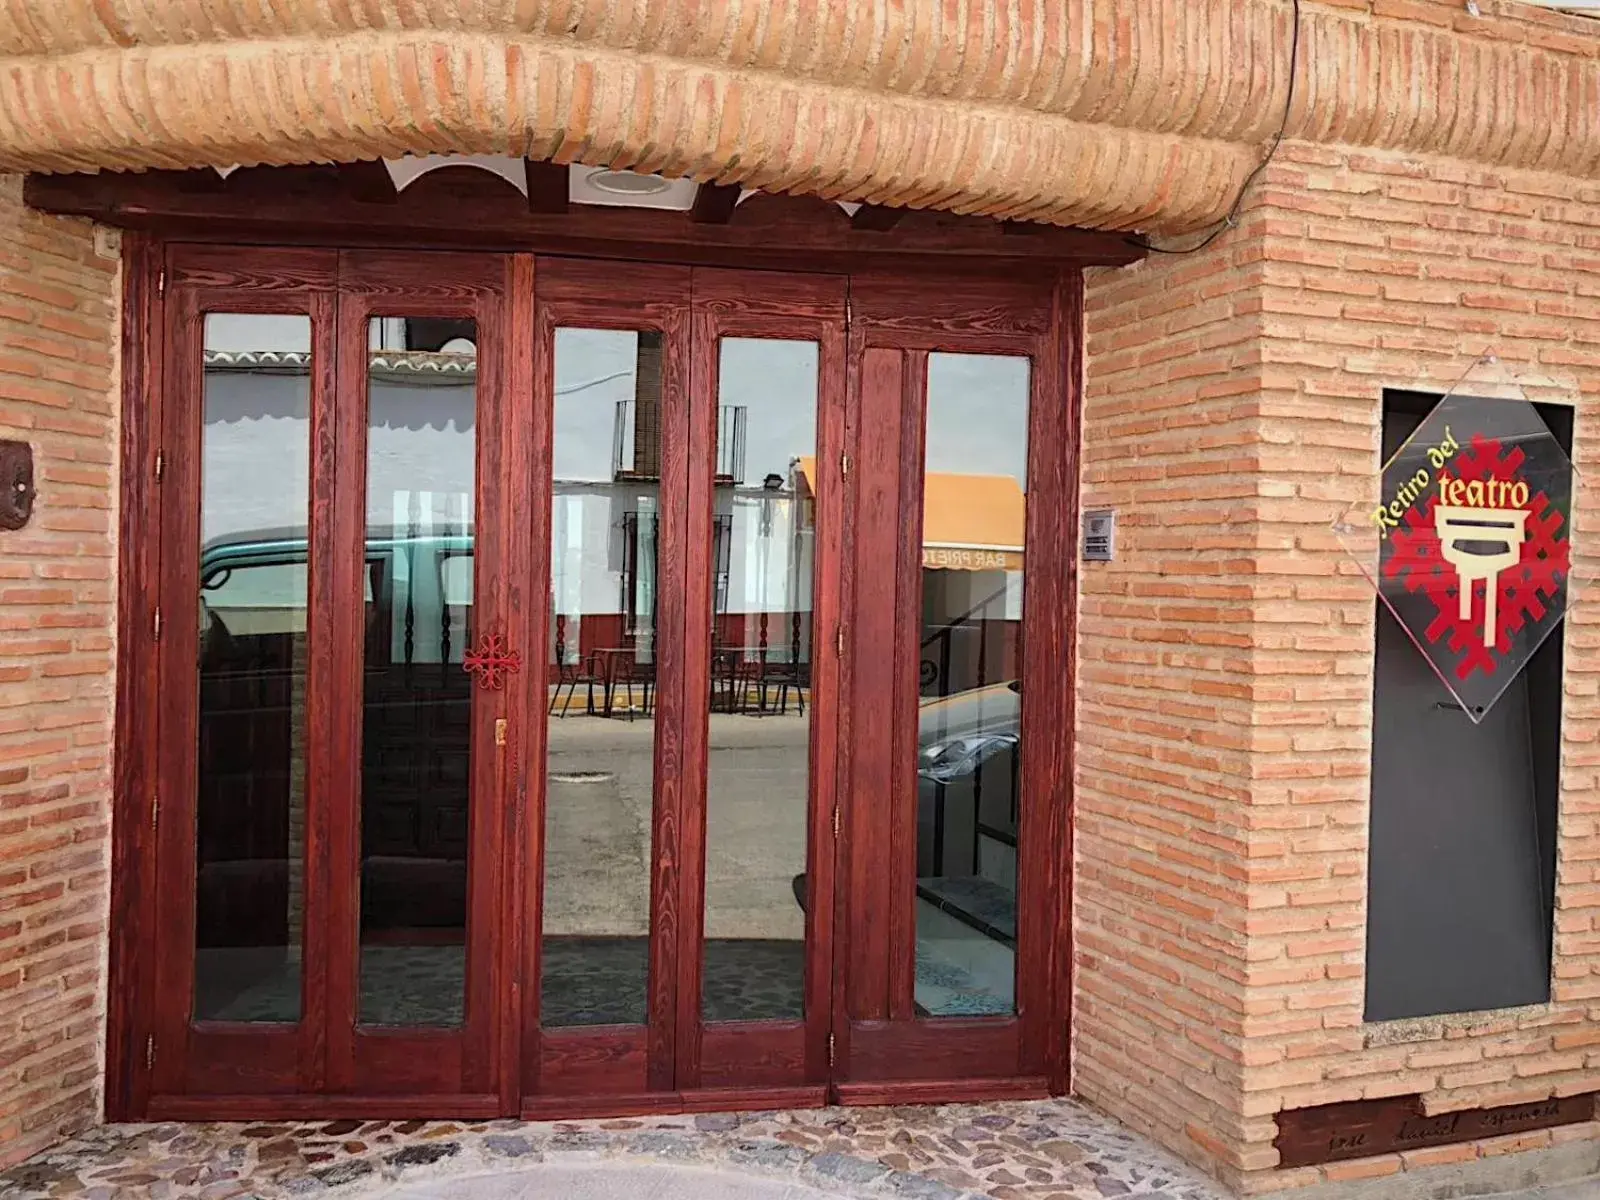 Facade/entrance in Retiro del Teatro Almagro